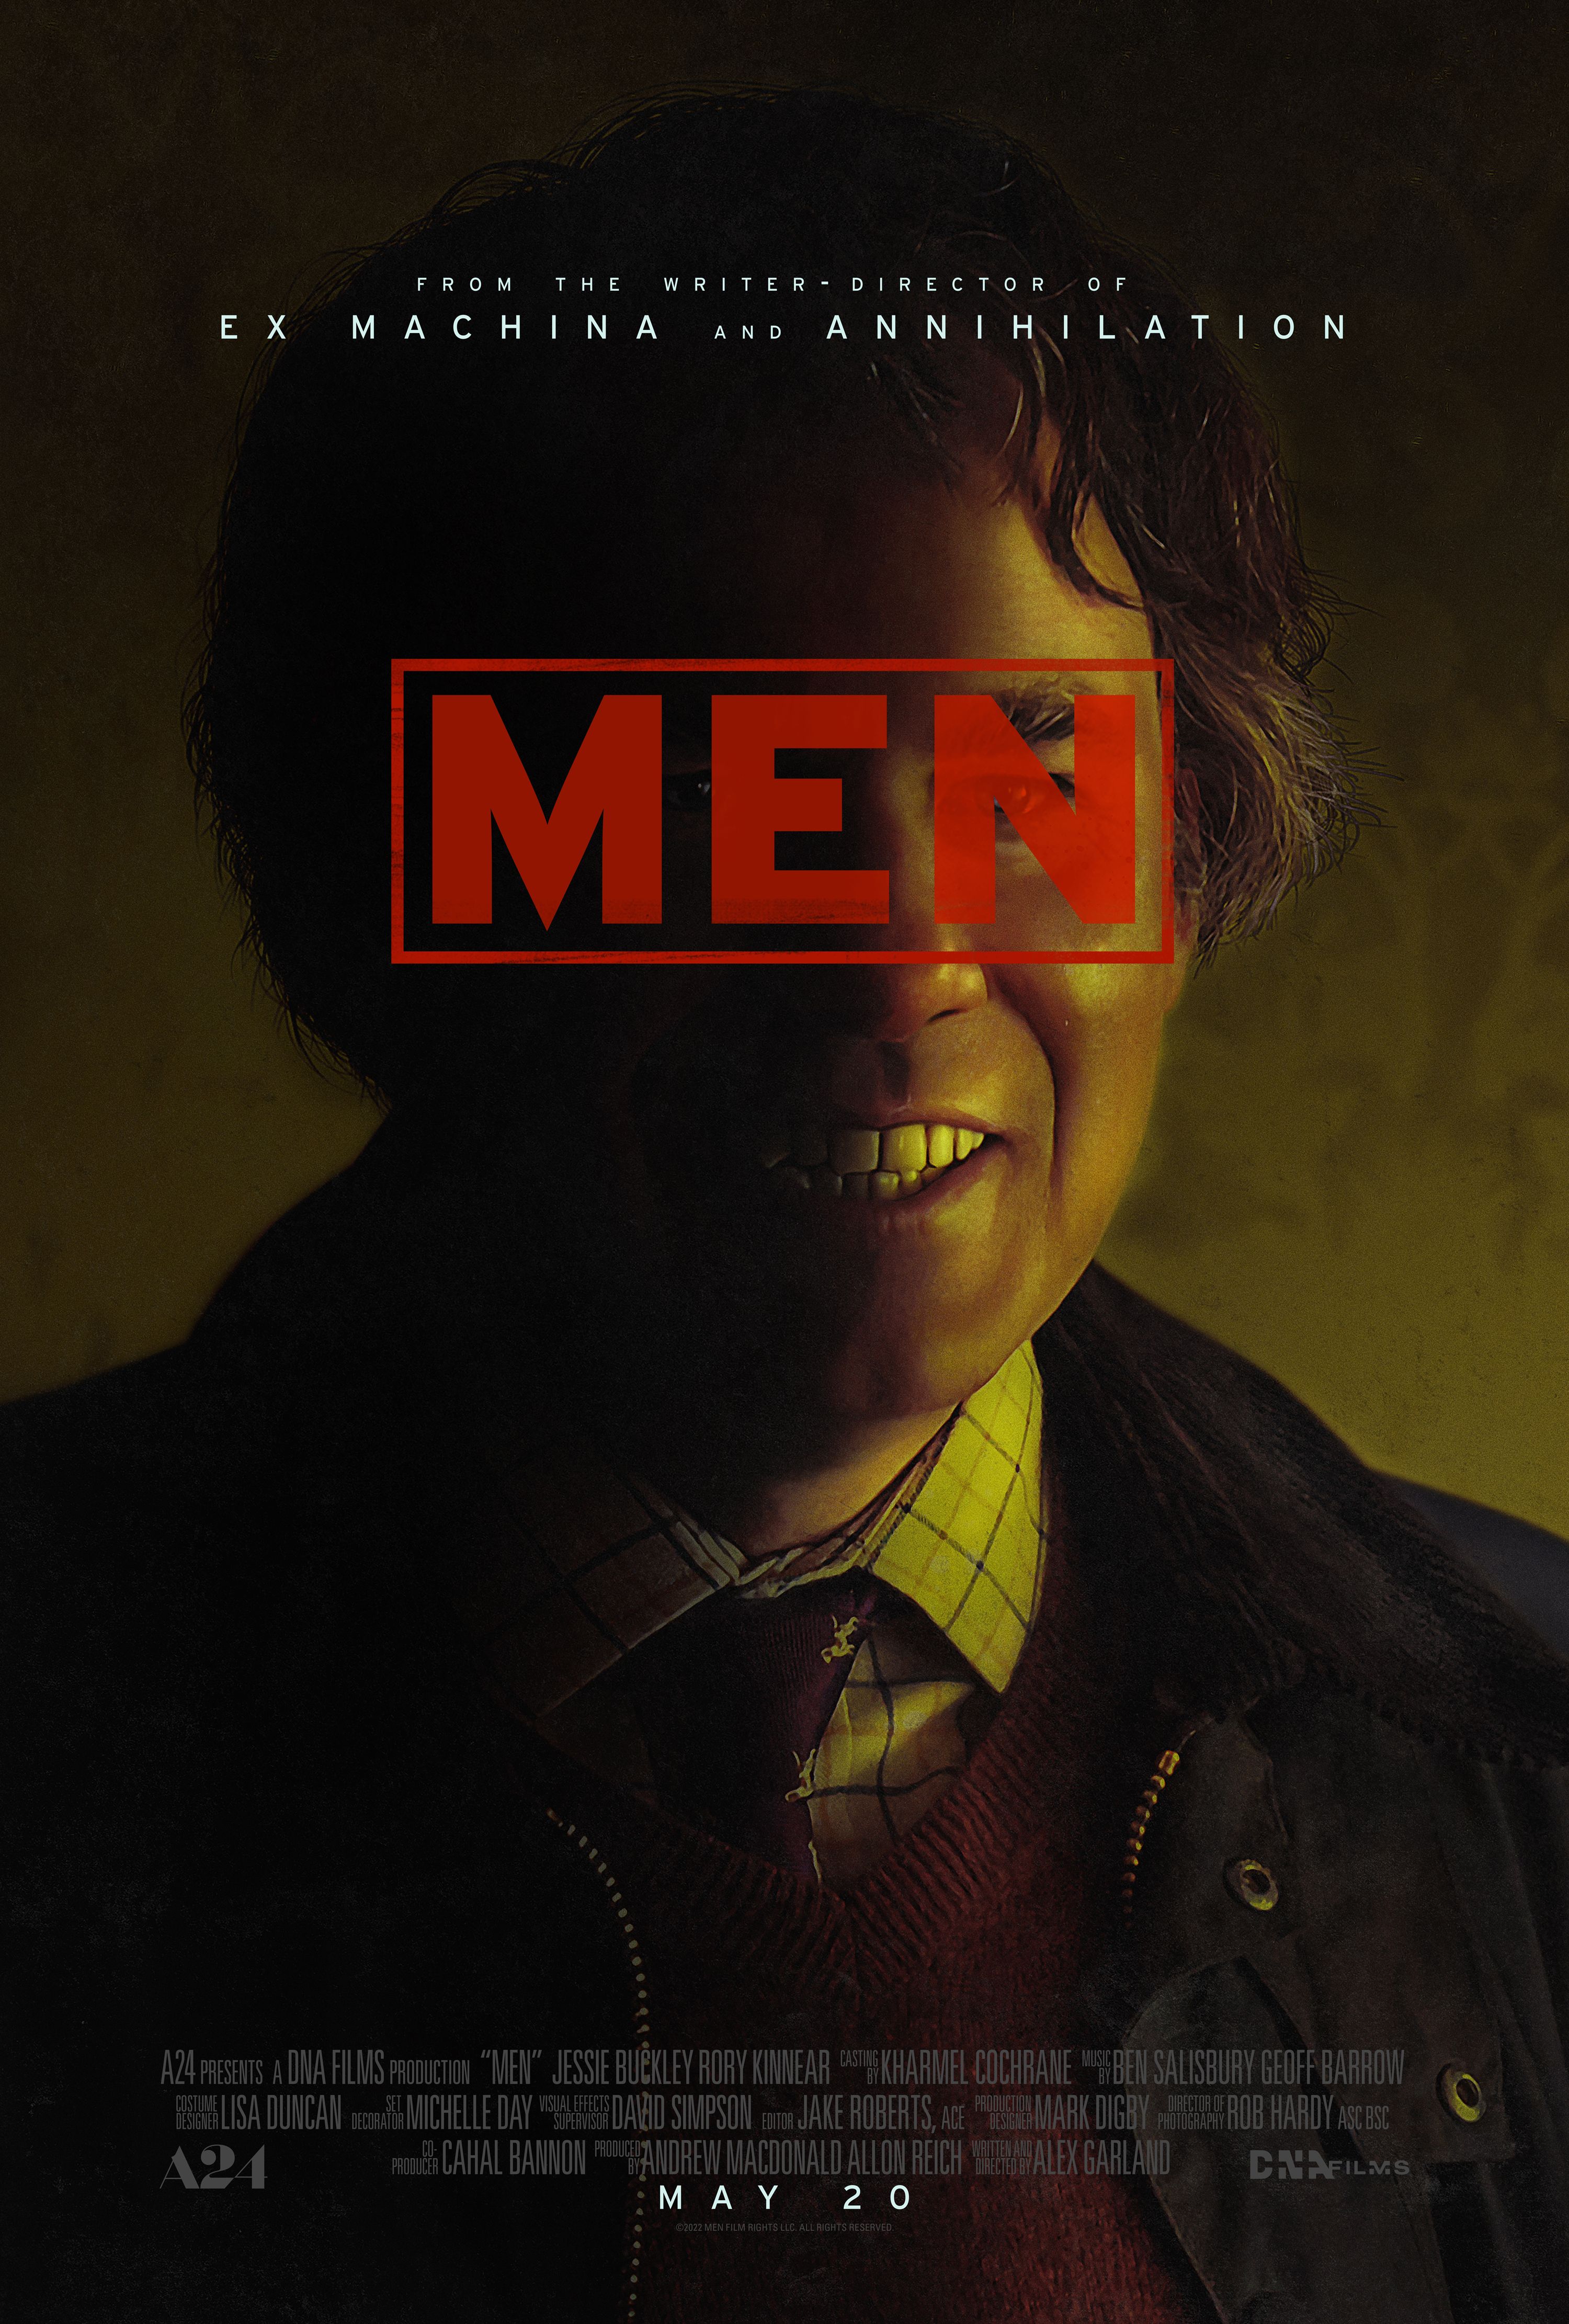 Men Trailer Reveals Alex Garland’s New Horror-Thriller Movie